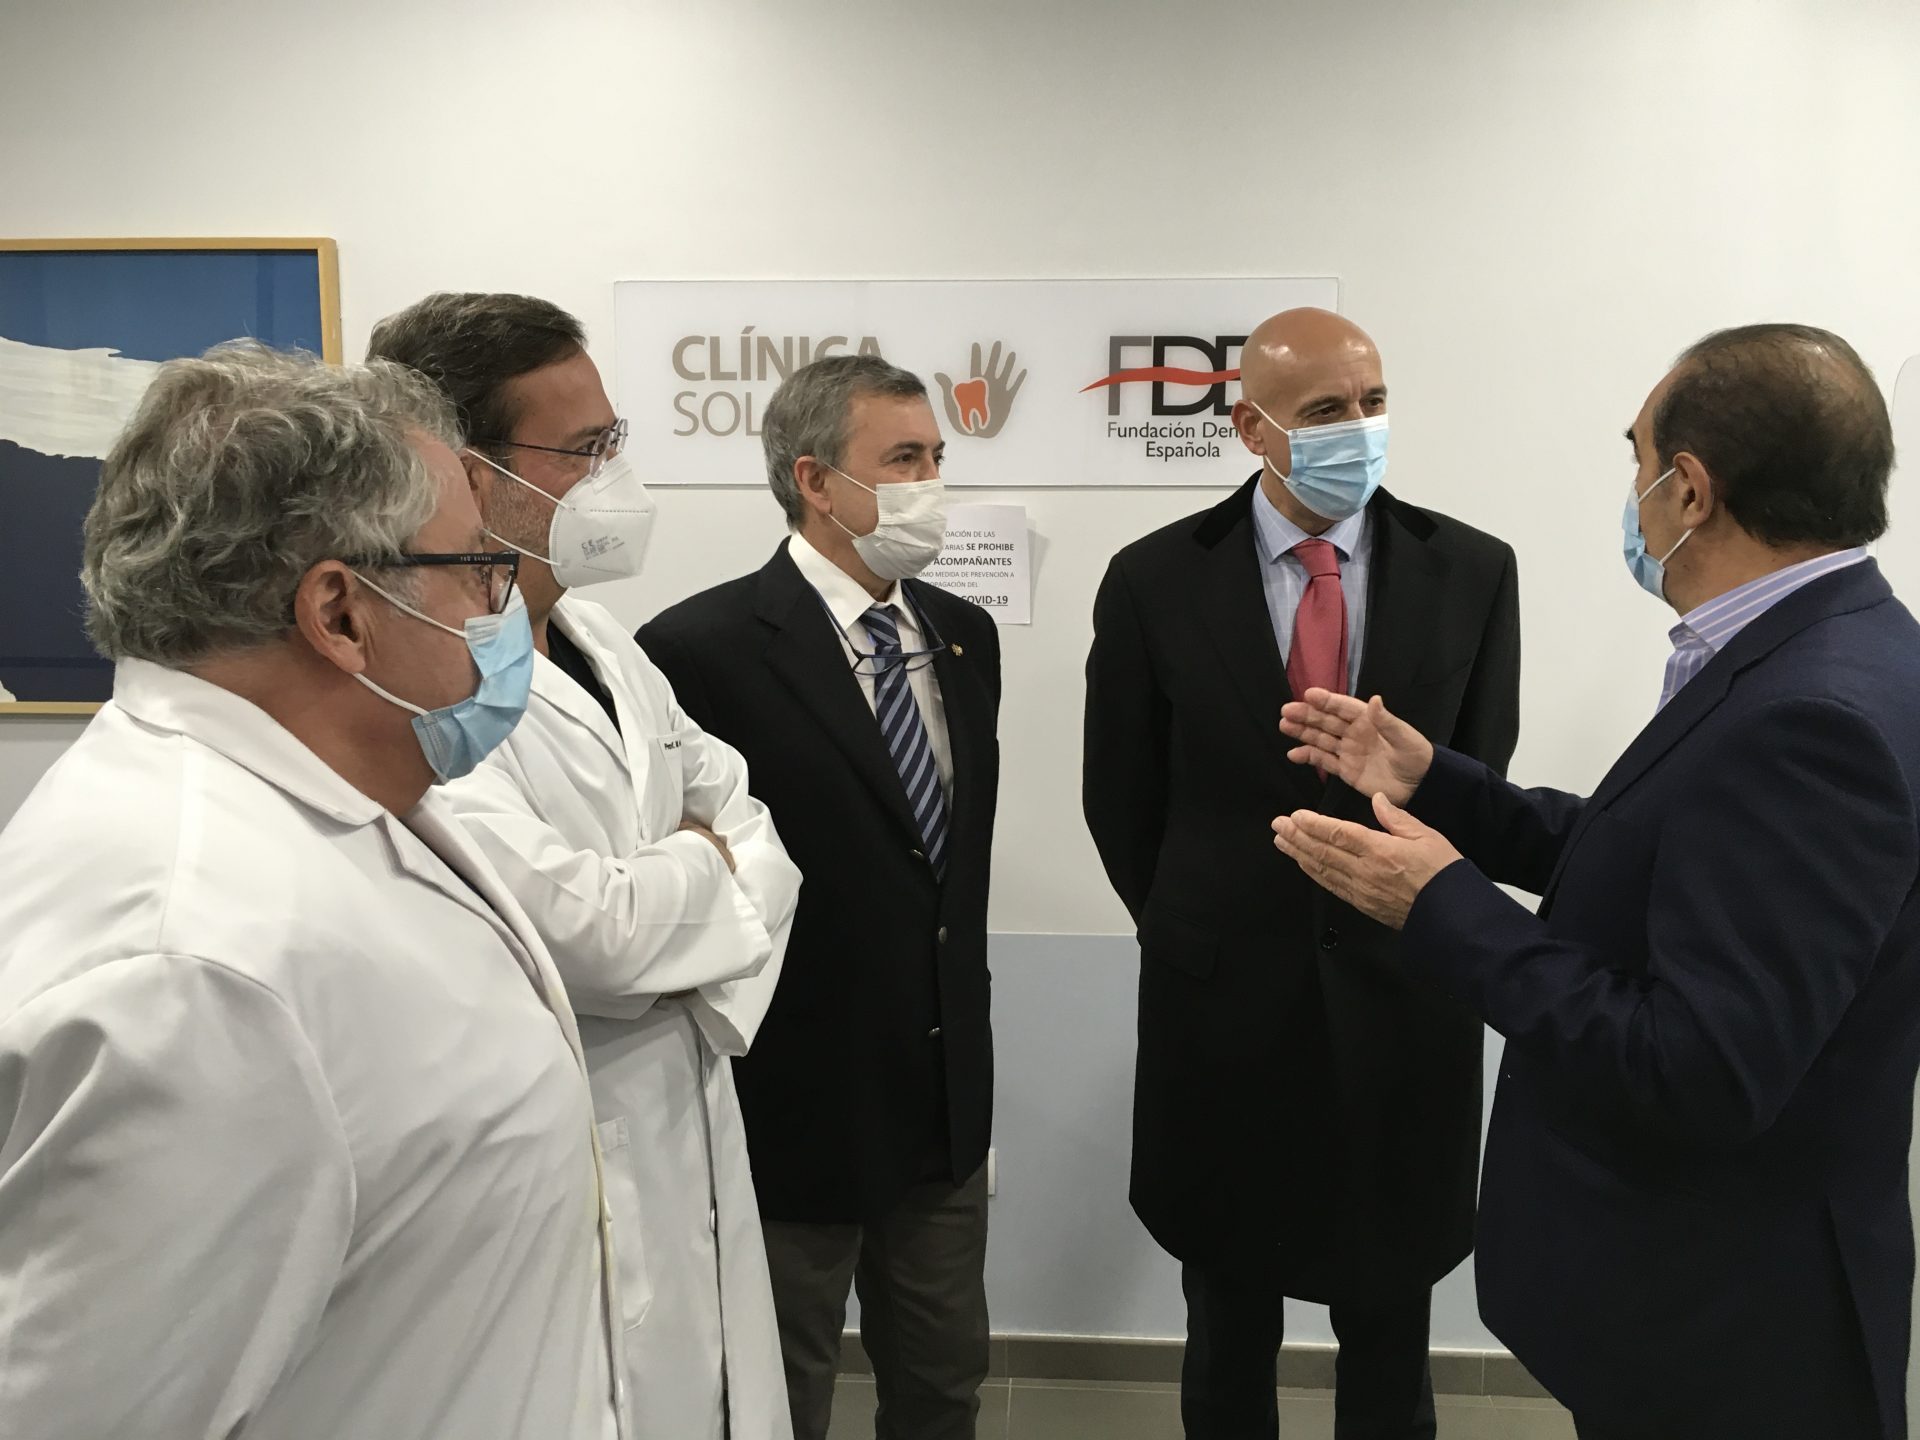 El alcalde de León visita las instalaciones de la Clínica Solidaria leonesa, decana en España